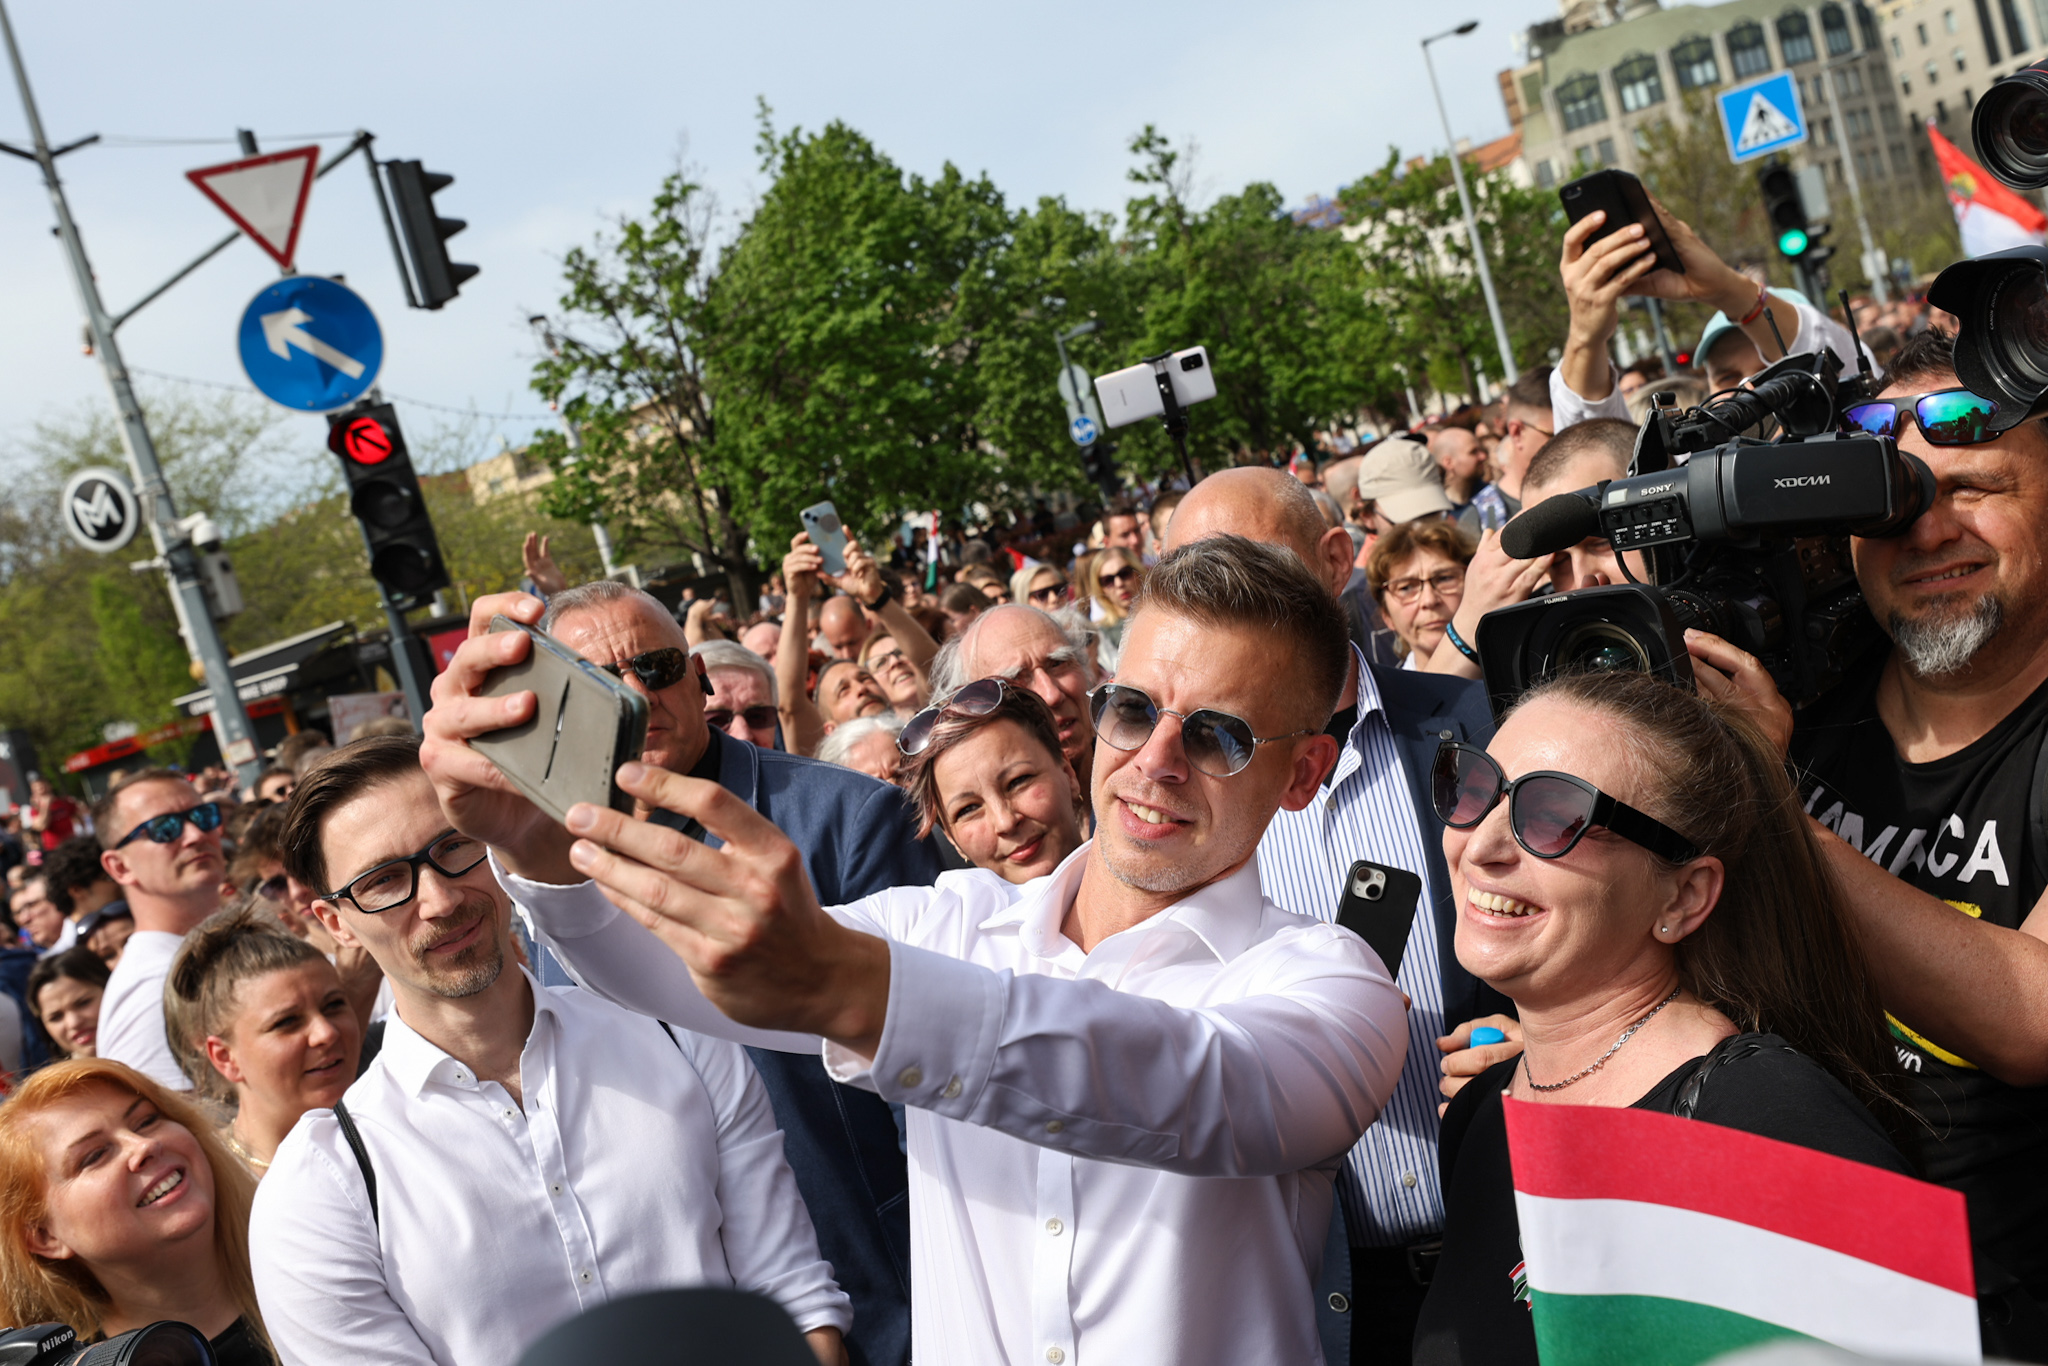 18 százalékon áll Magyar Péter pártja, de még nem érte utol a baloldali összefogást a Republikon szerint